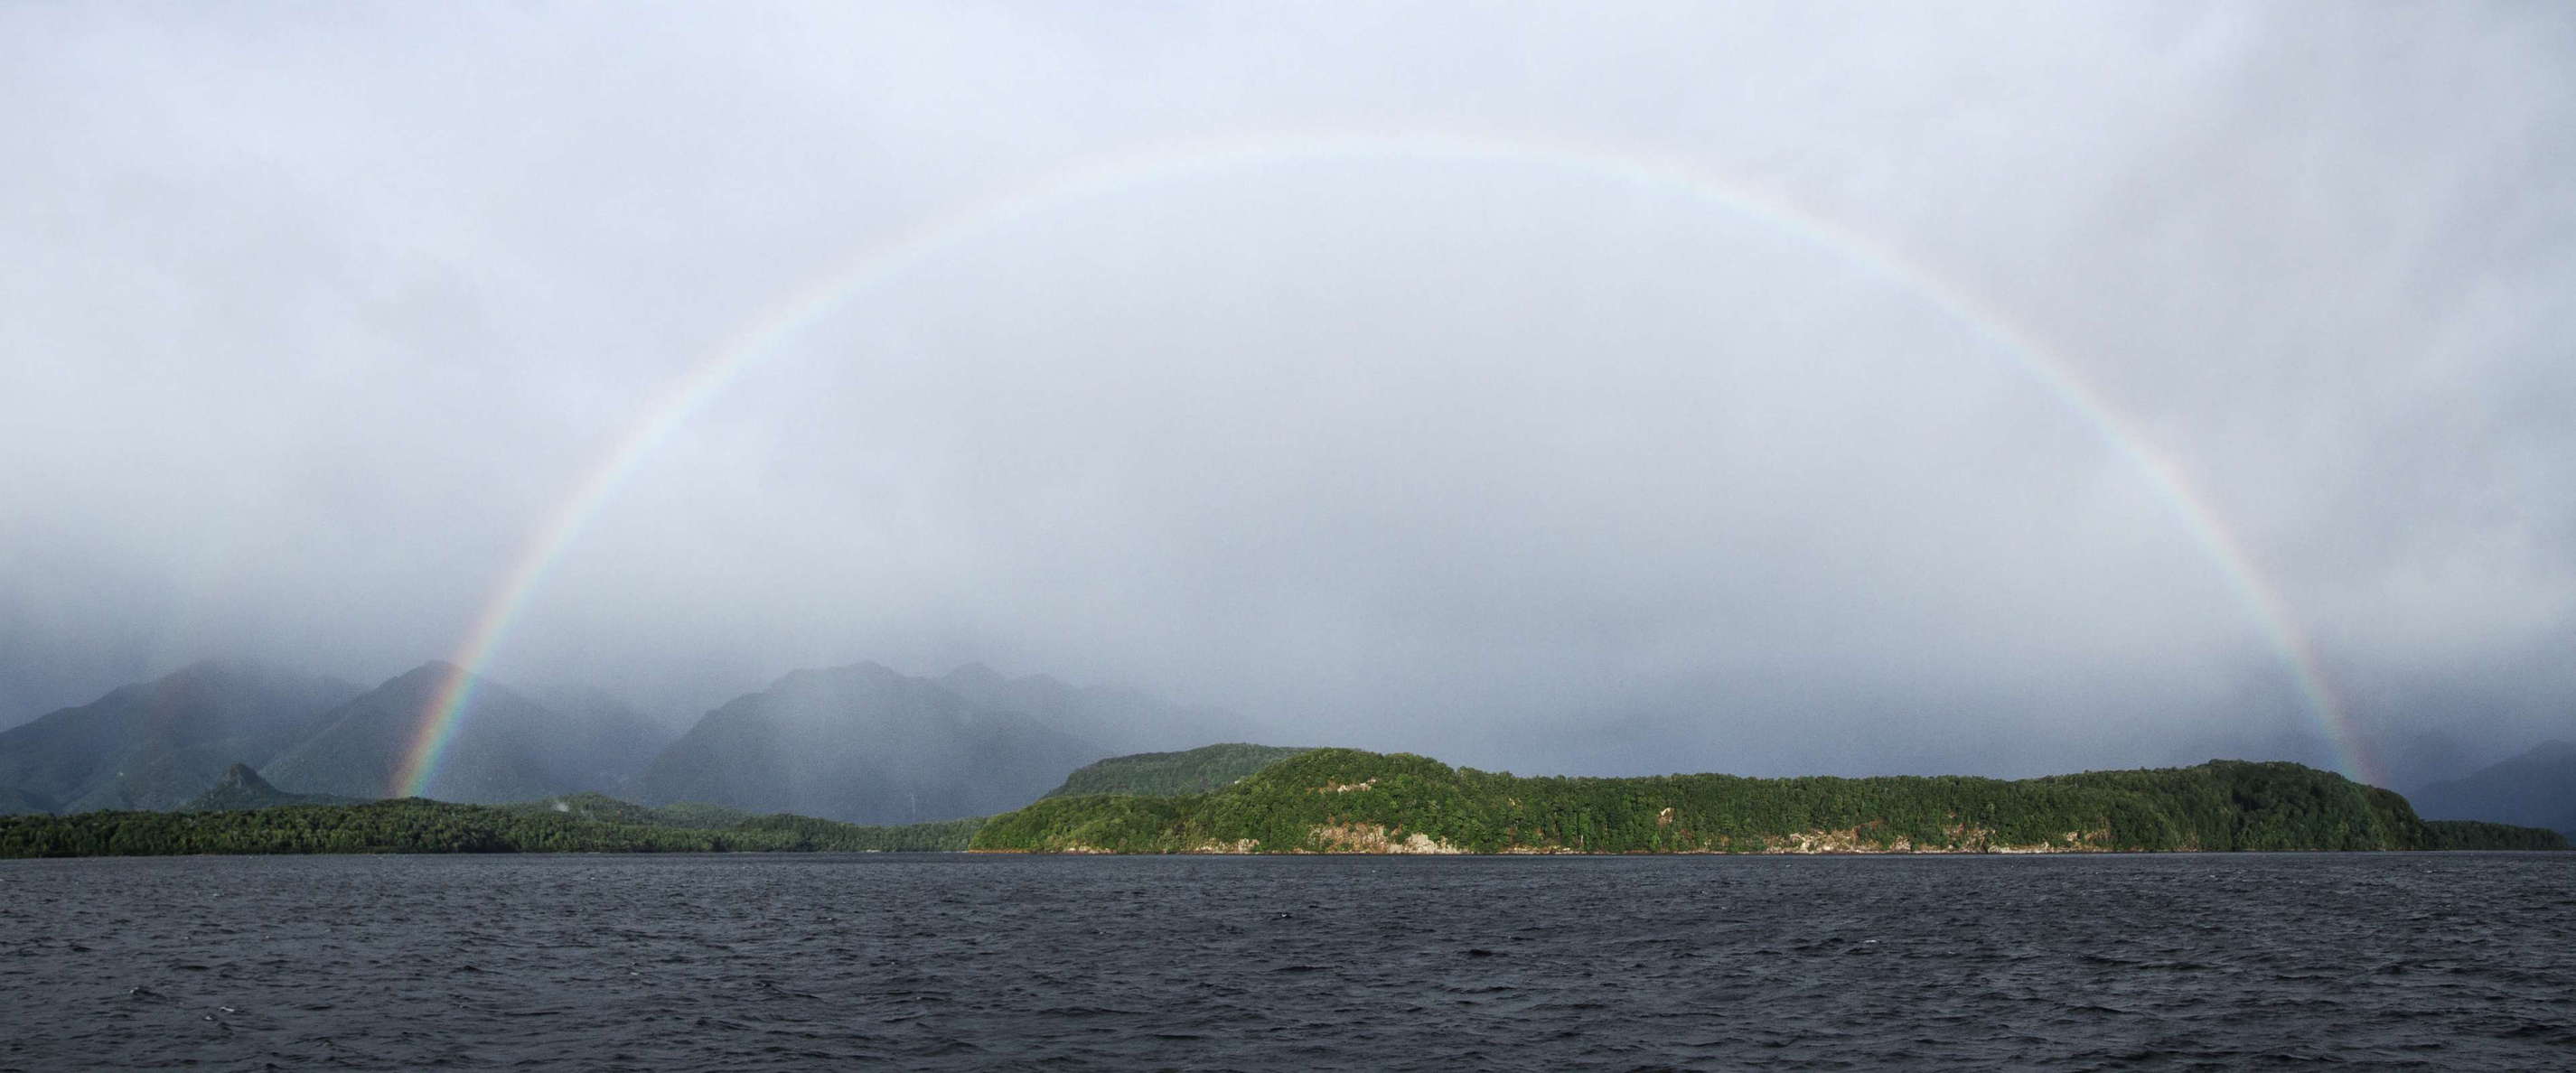 Lake Manapouri  |  Panorama with rainbow